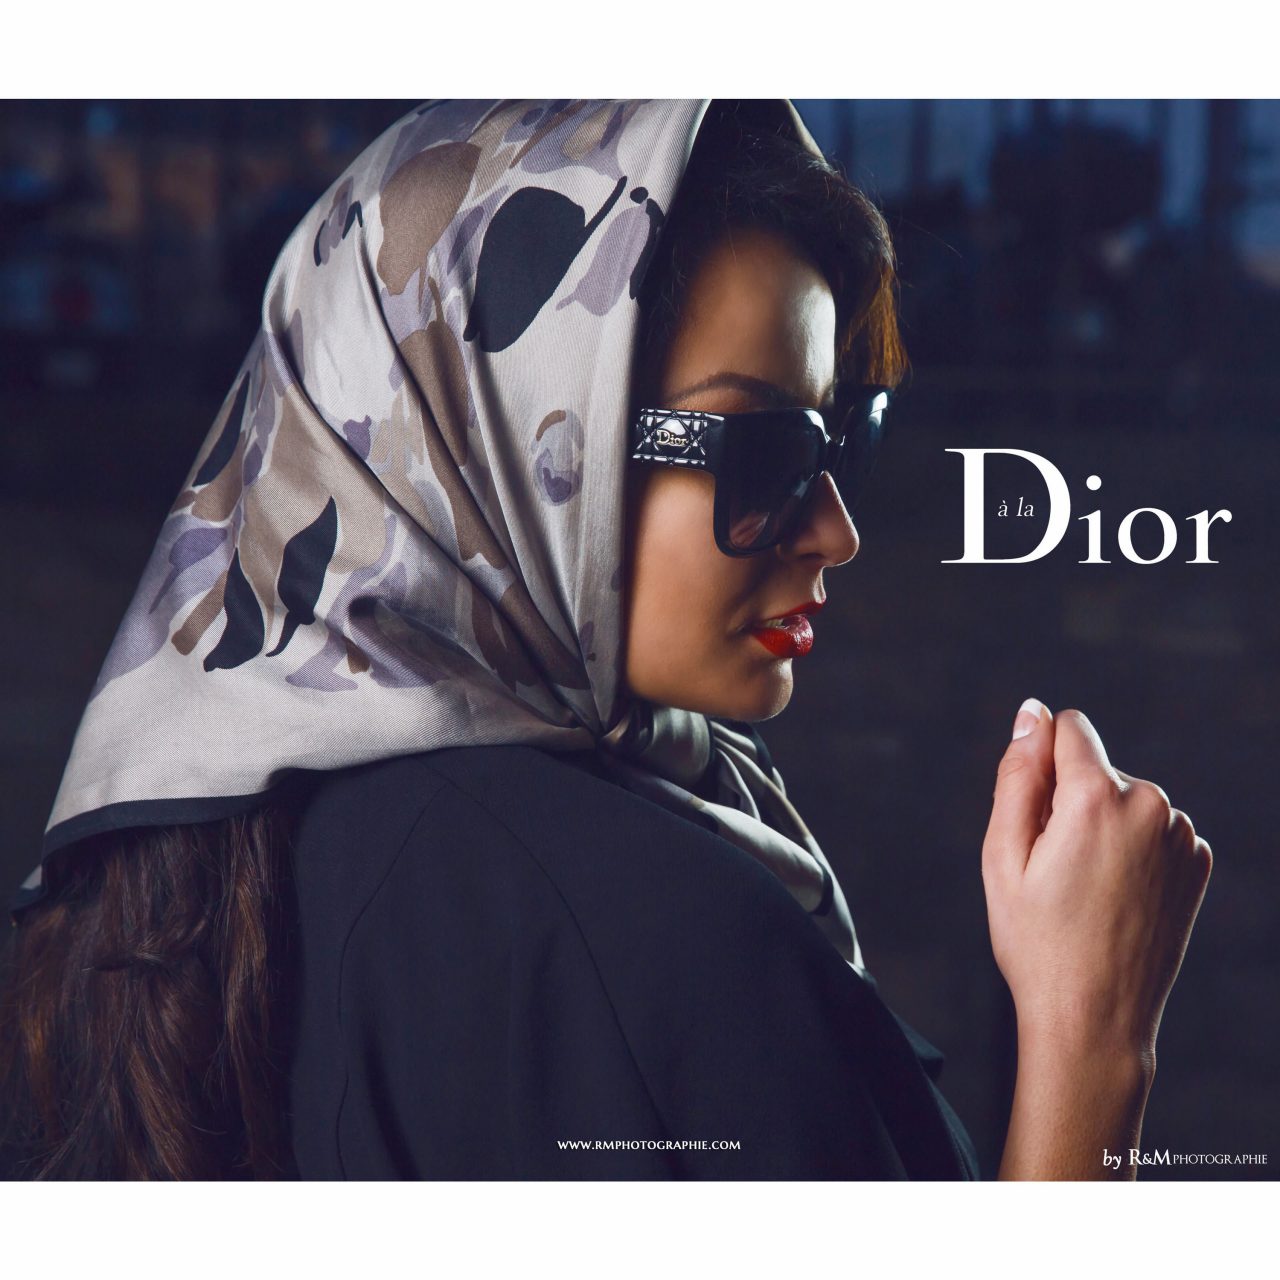 rmphotographie-fashion-photographer-photographe-mode-paris-book-photo-commercial-publicite-advertising-sunglasses-dior-lunettes-soleil